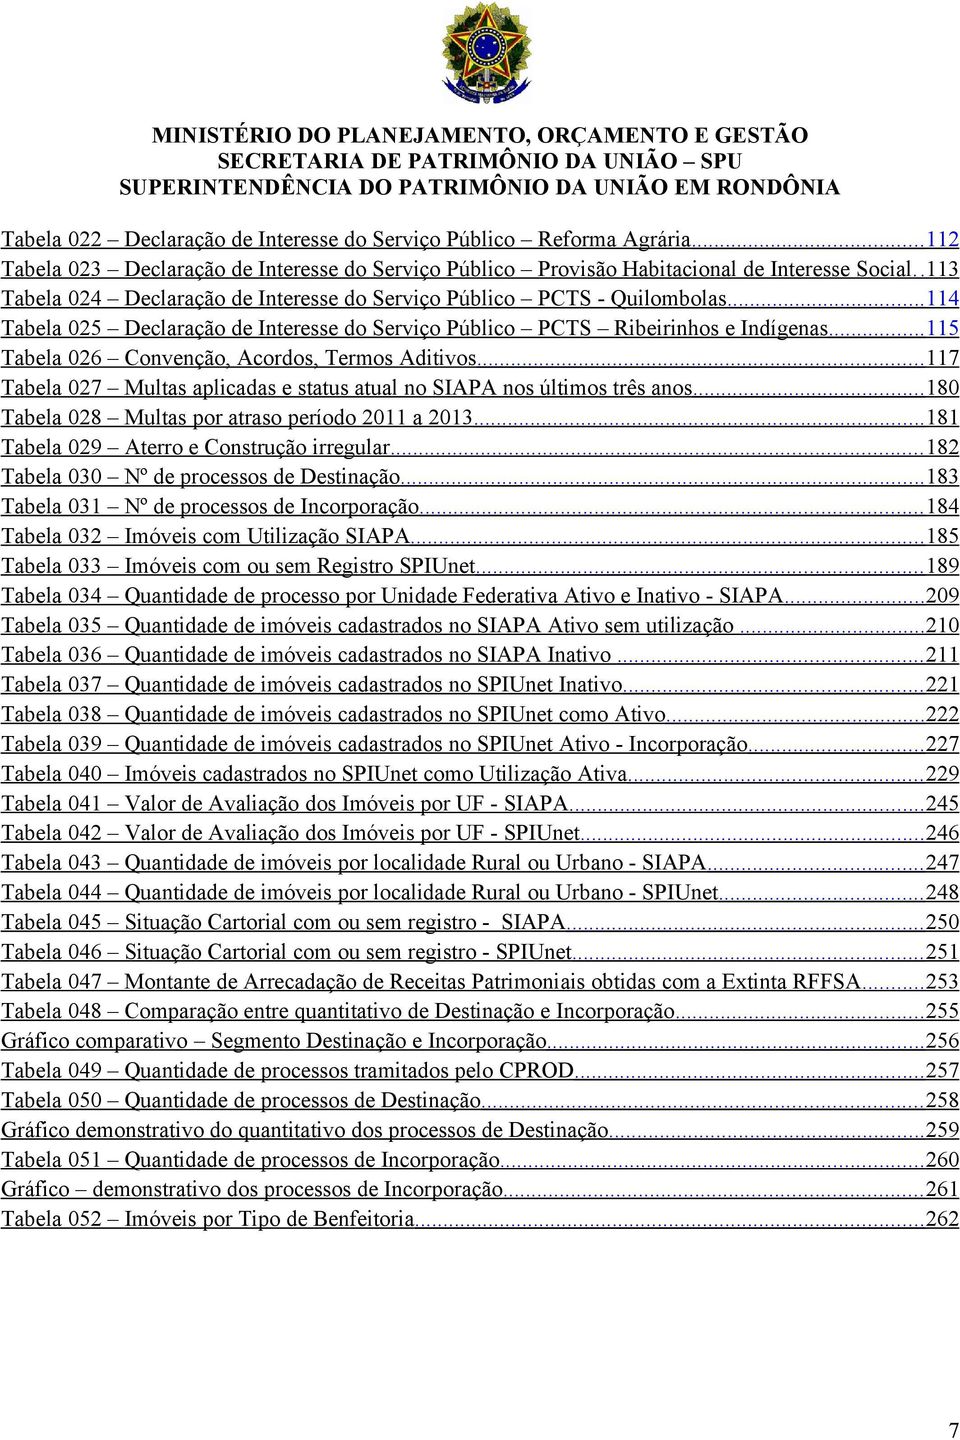 .. Tabela 0 Declaração de Interesse do Serviço Público PCTS Ribeirinhos e Indígenas... Tabela 0 Convenção, Acordos, Termos Aditivos.